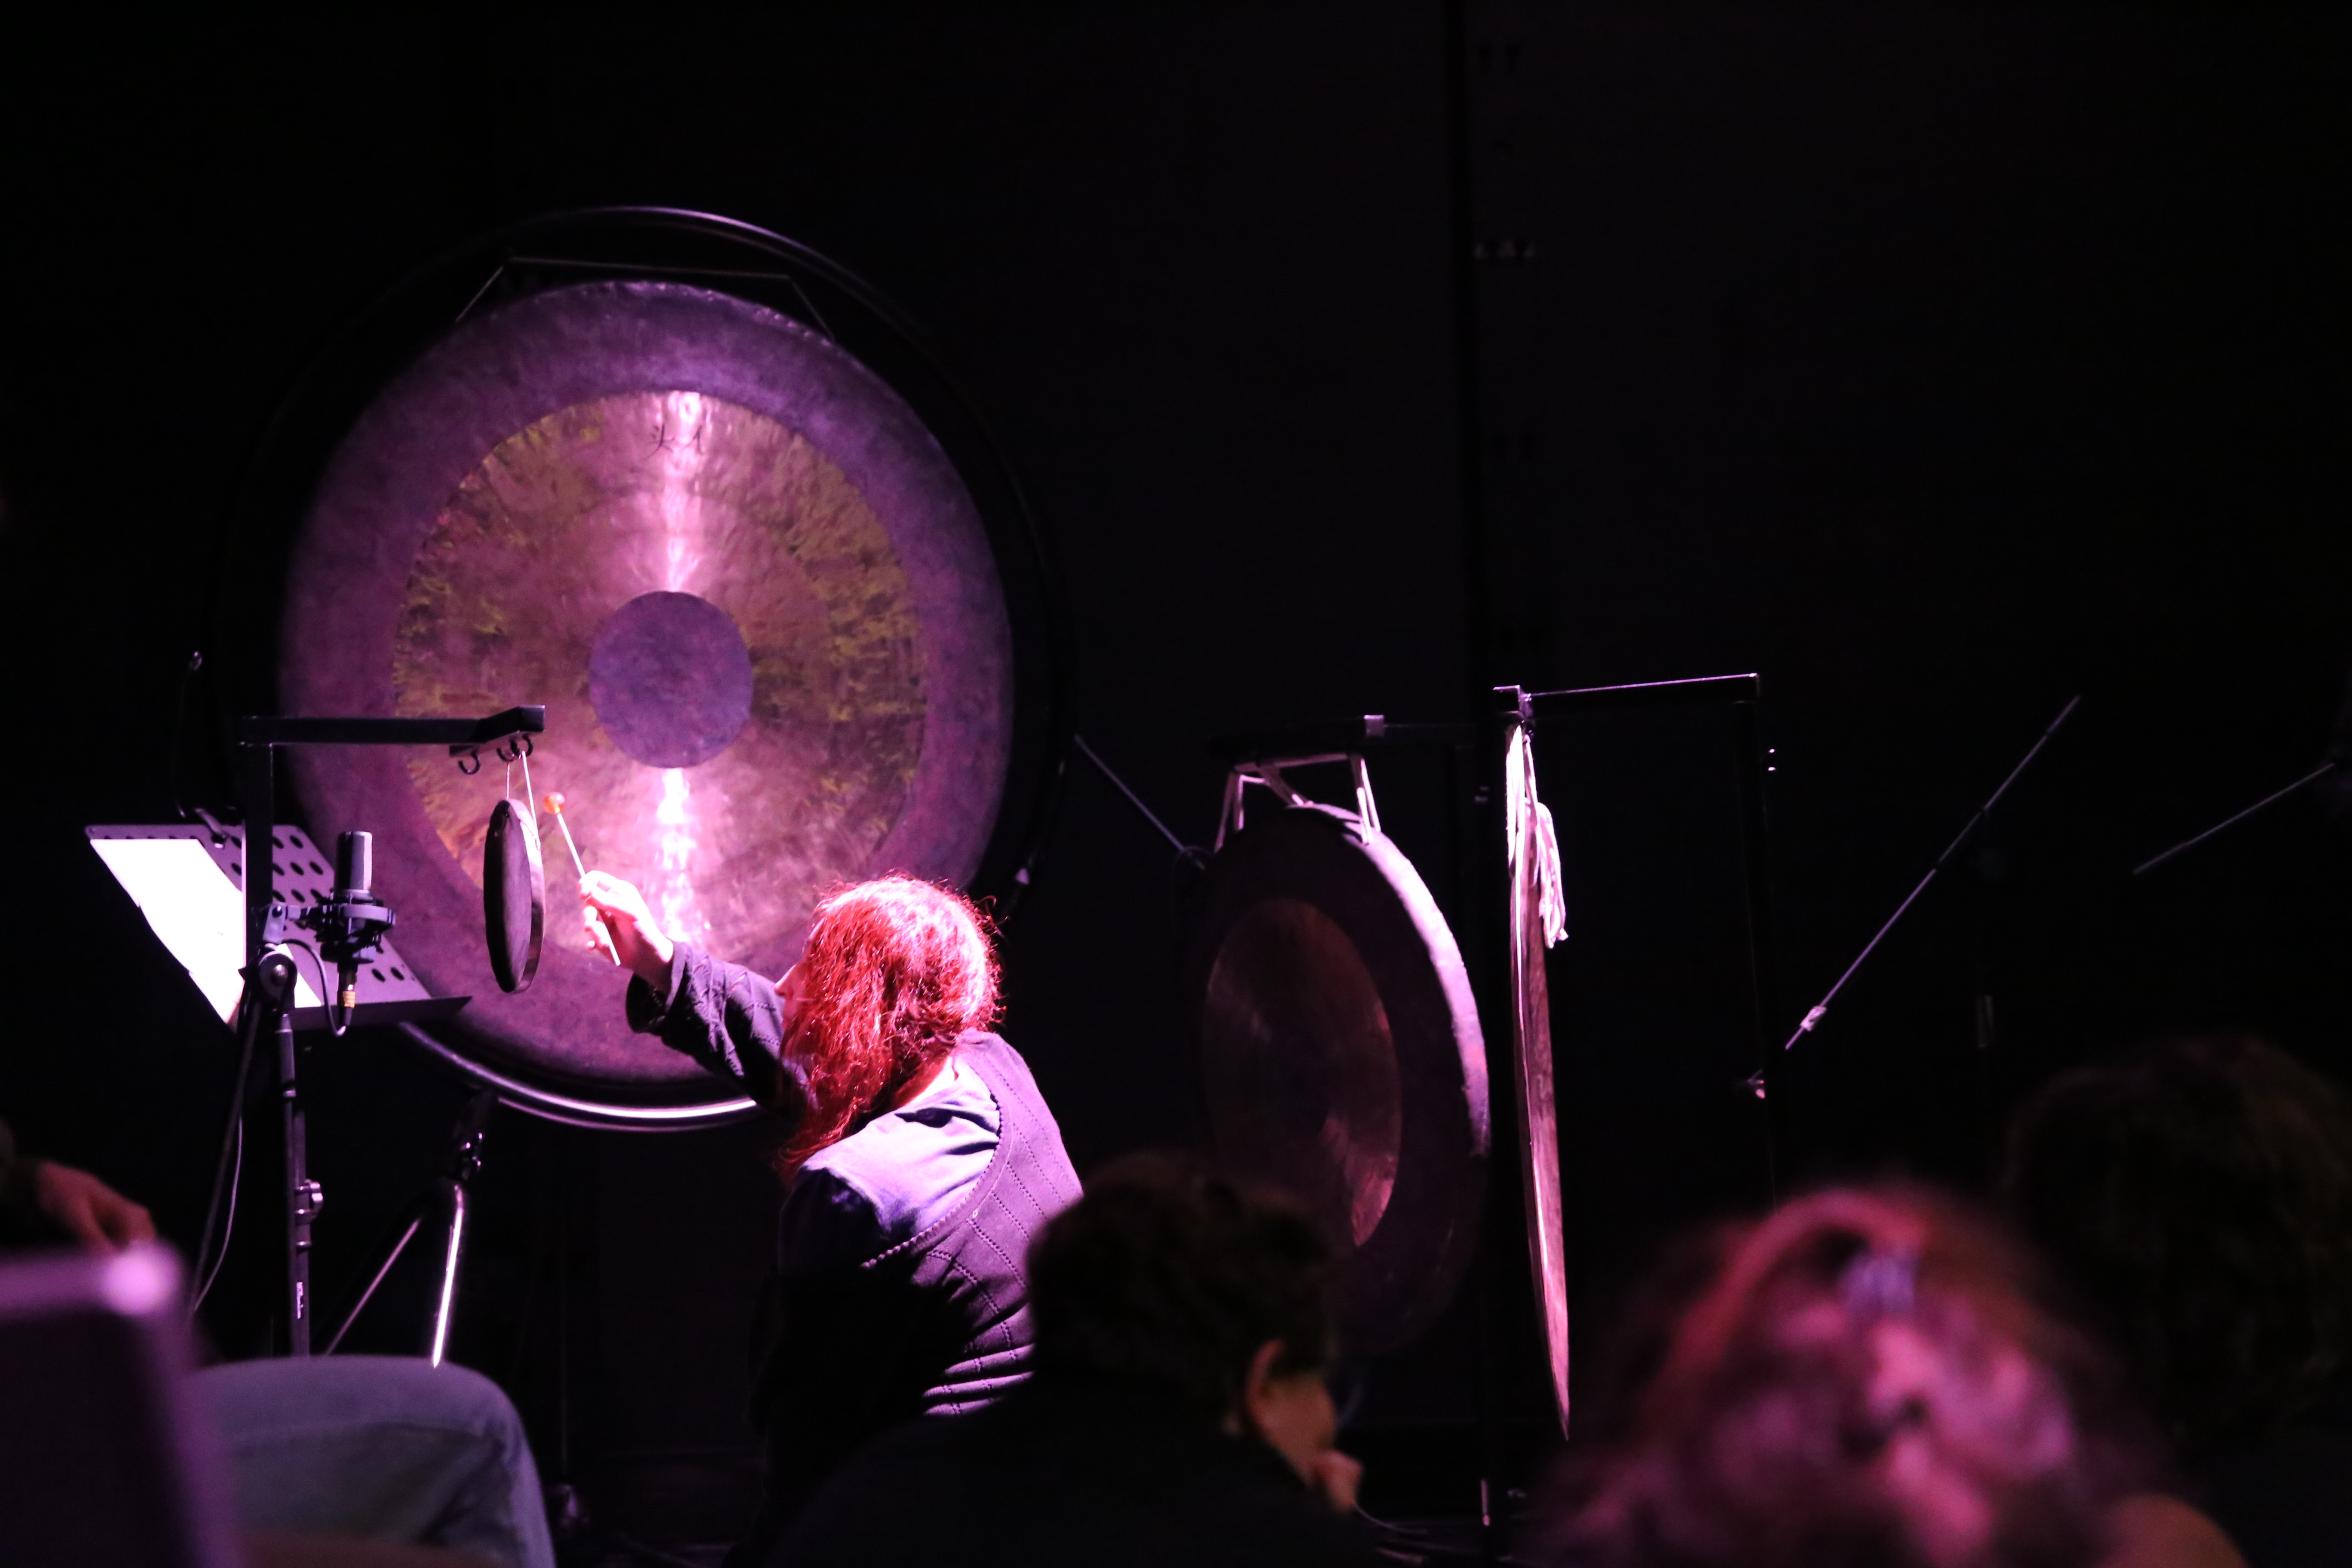 L’ensemble Orgone joue une pièce pour gong et tamtam – Himalaya électrique